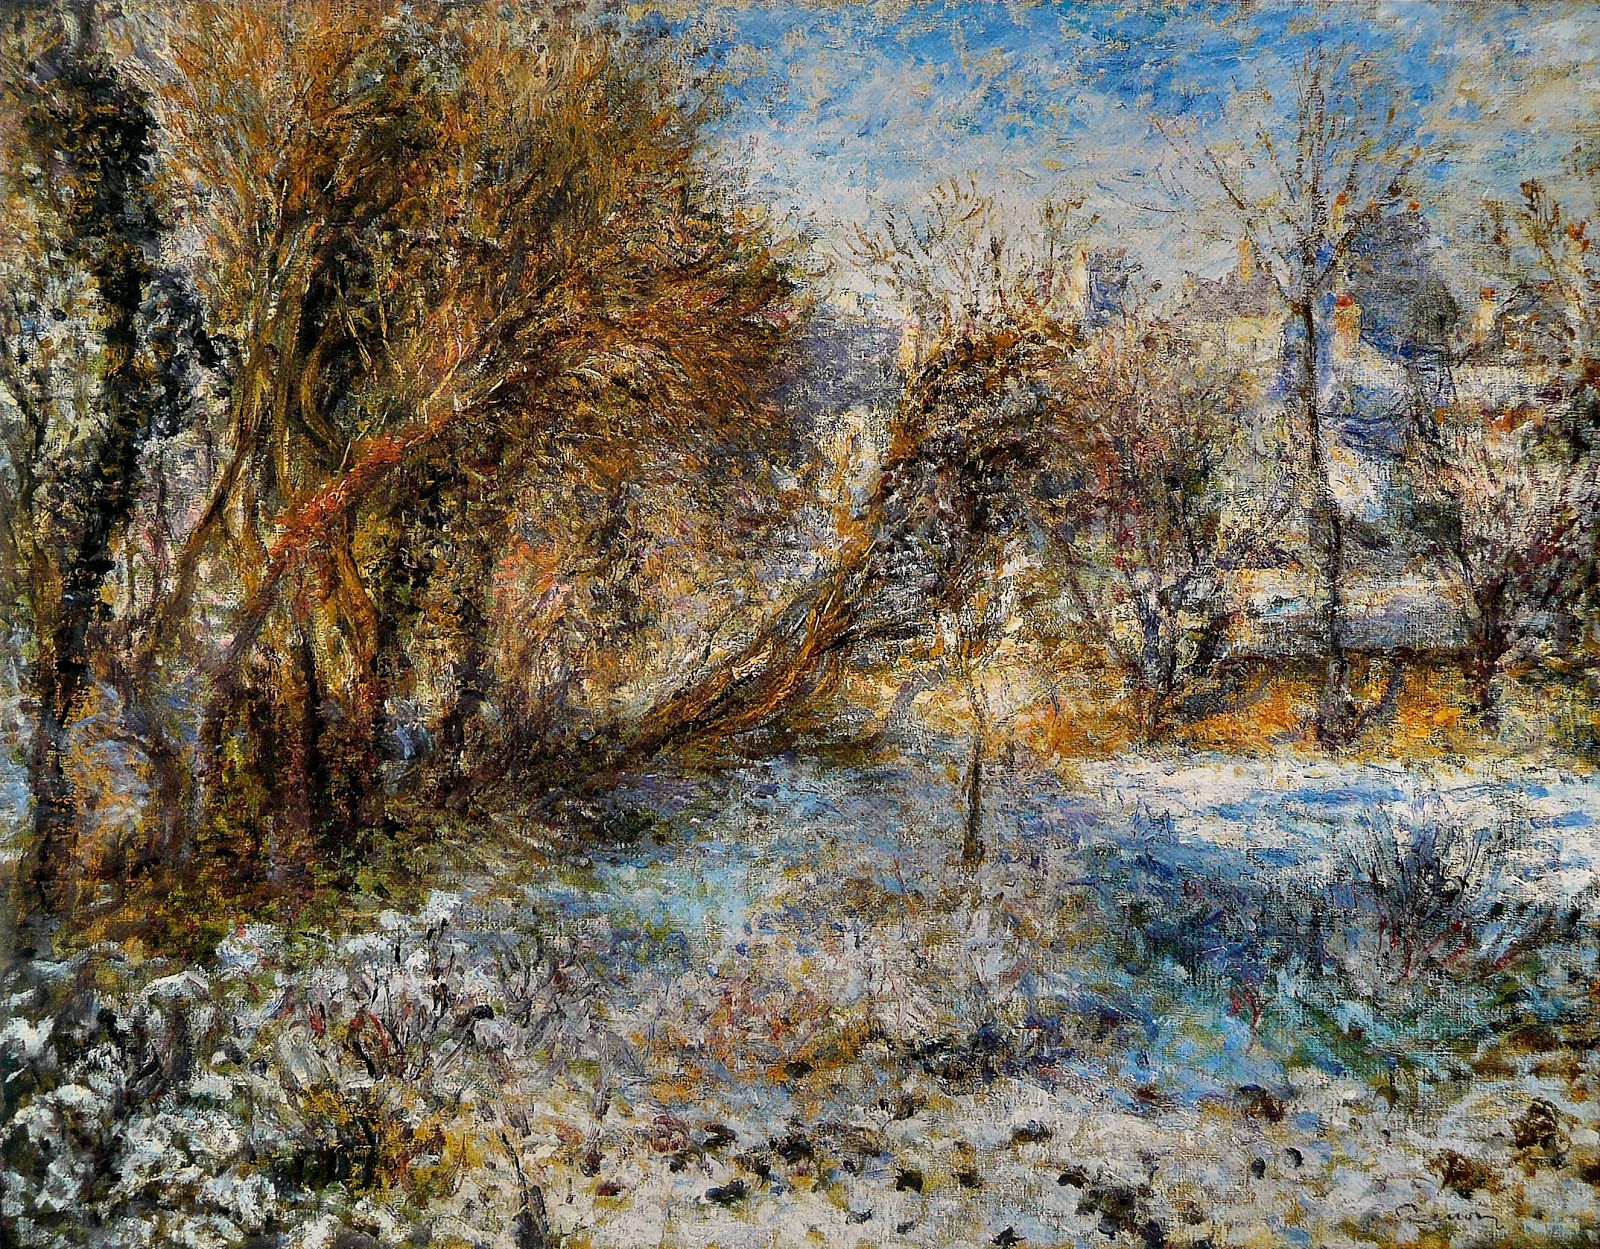 Pierre+Auguste+Renoir-1841-1-19 (844).jpg